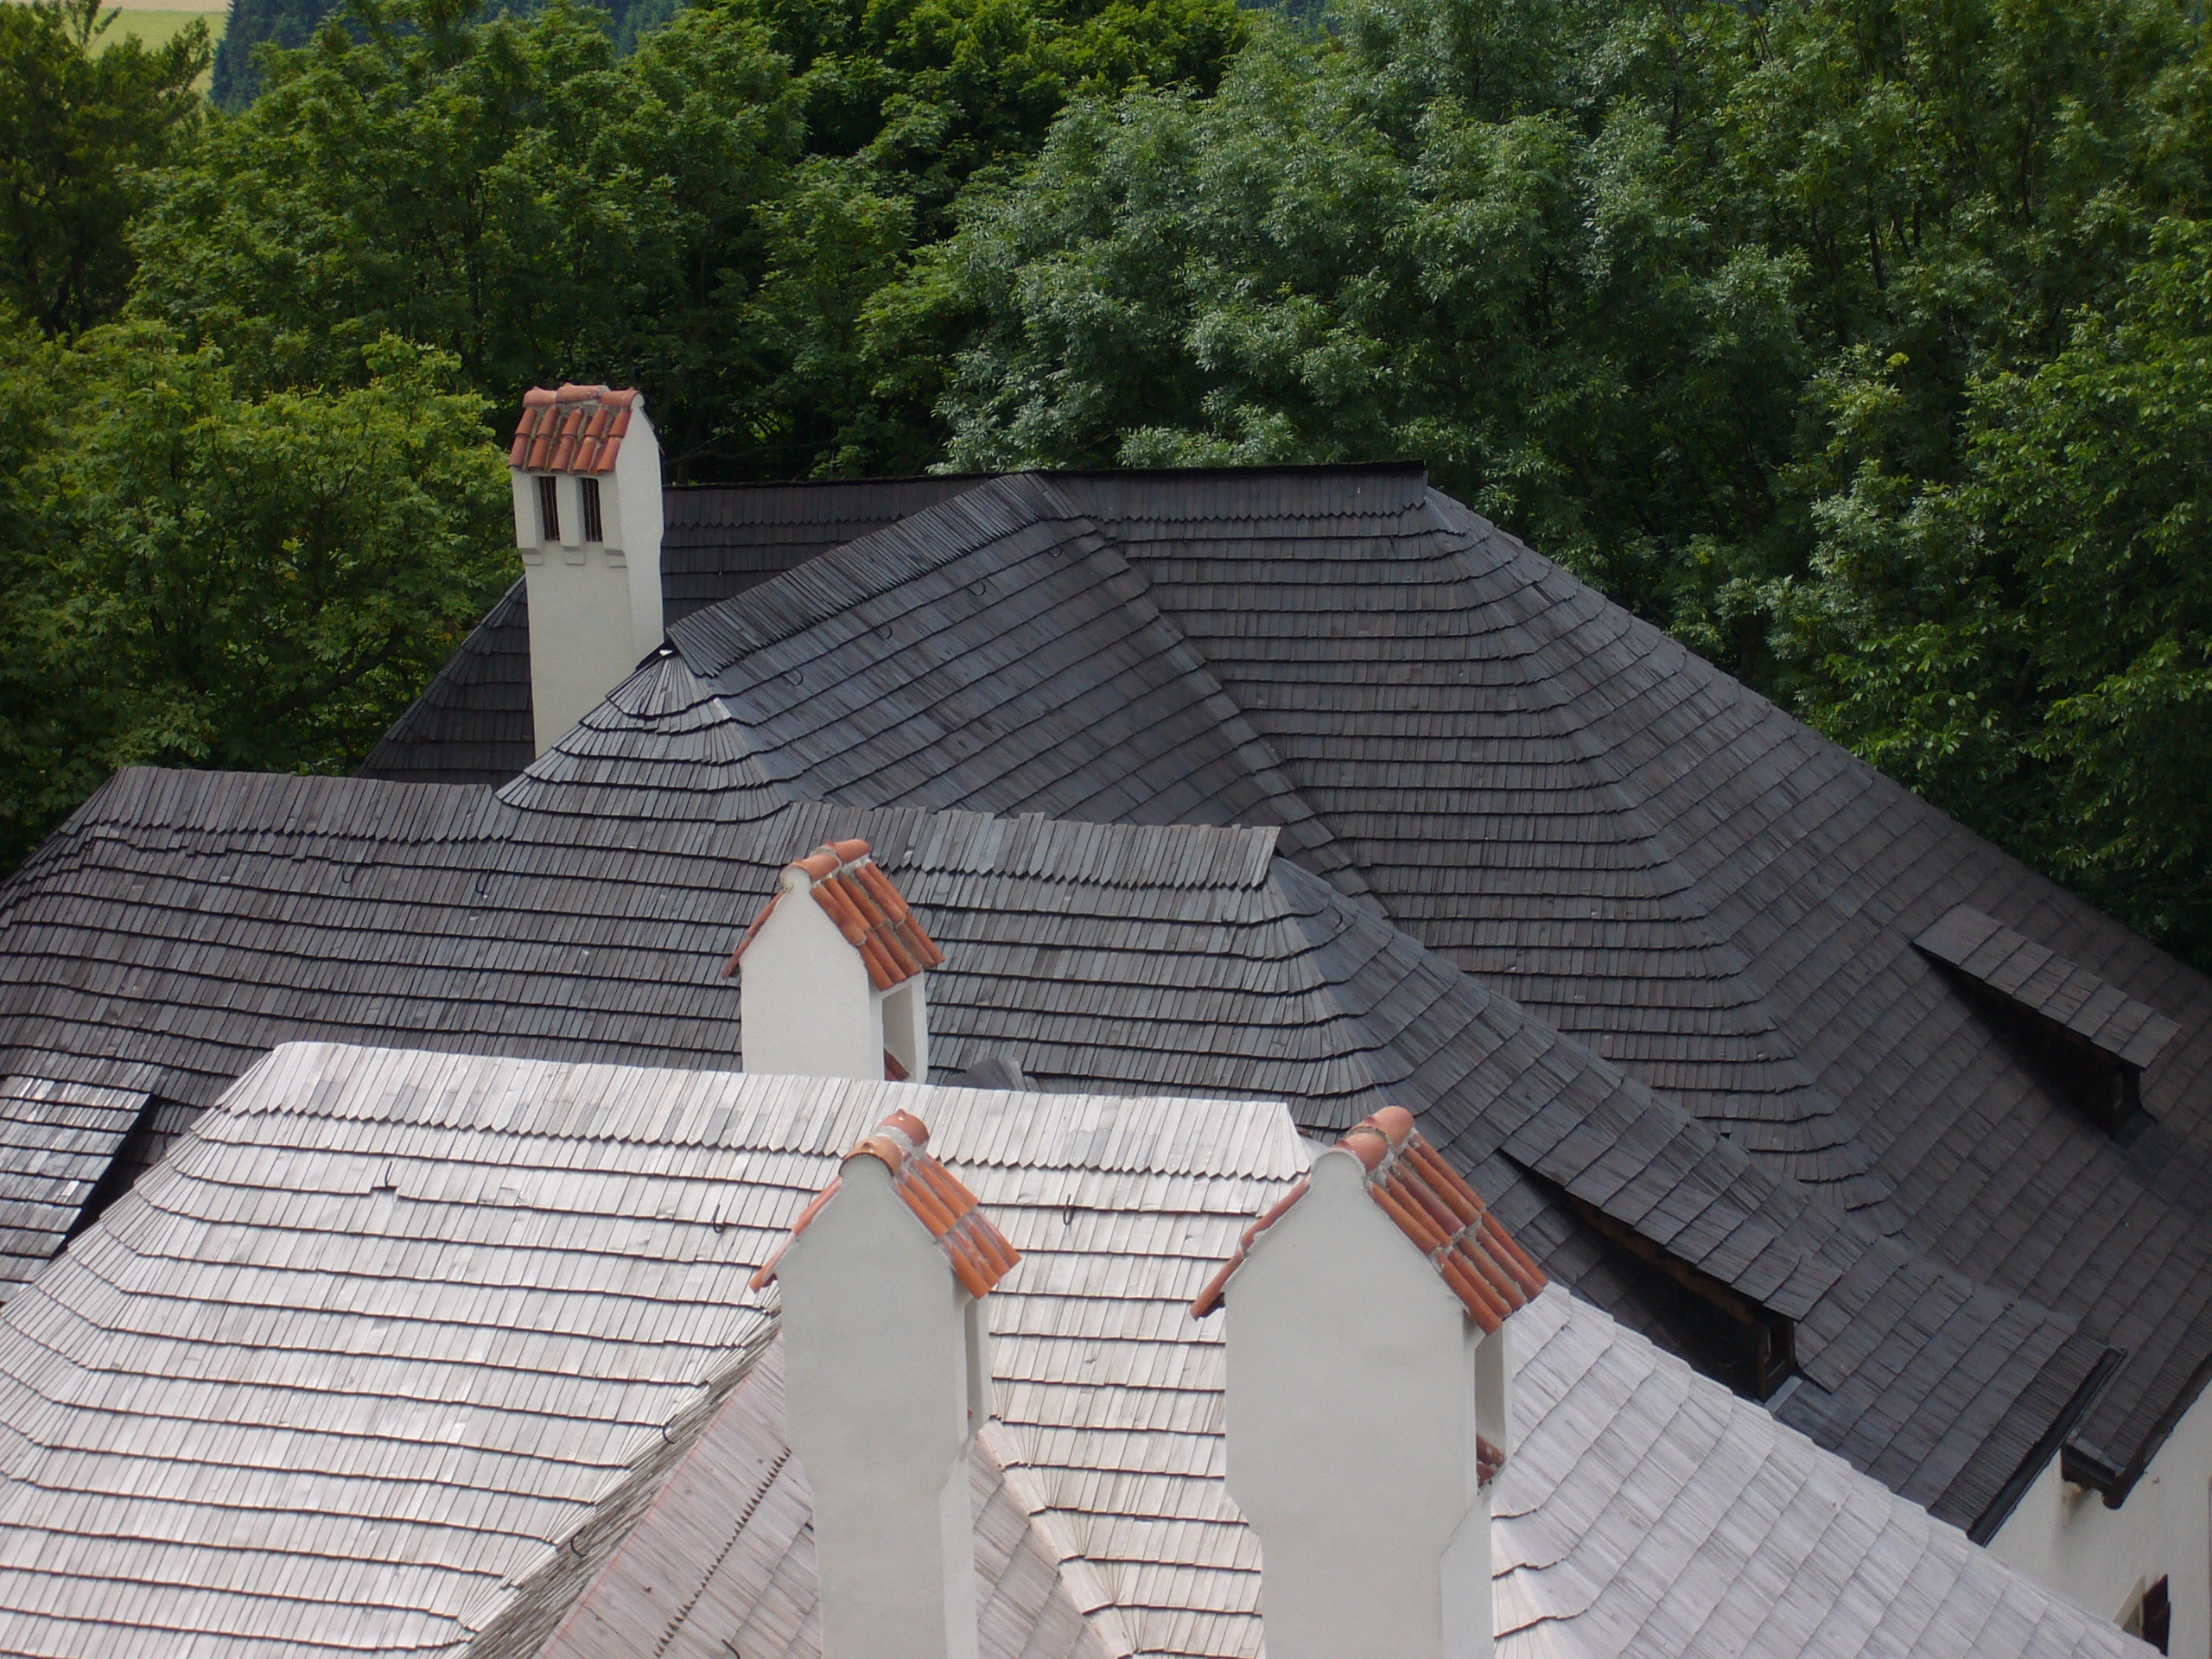 Roštej u Telče - šindľové strechy natreté Karbolineom